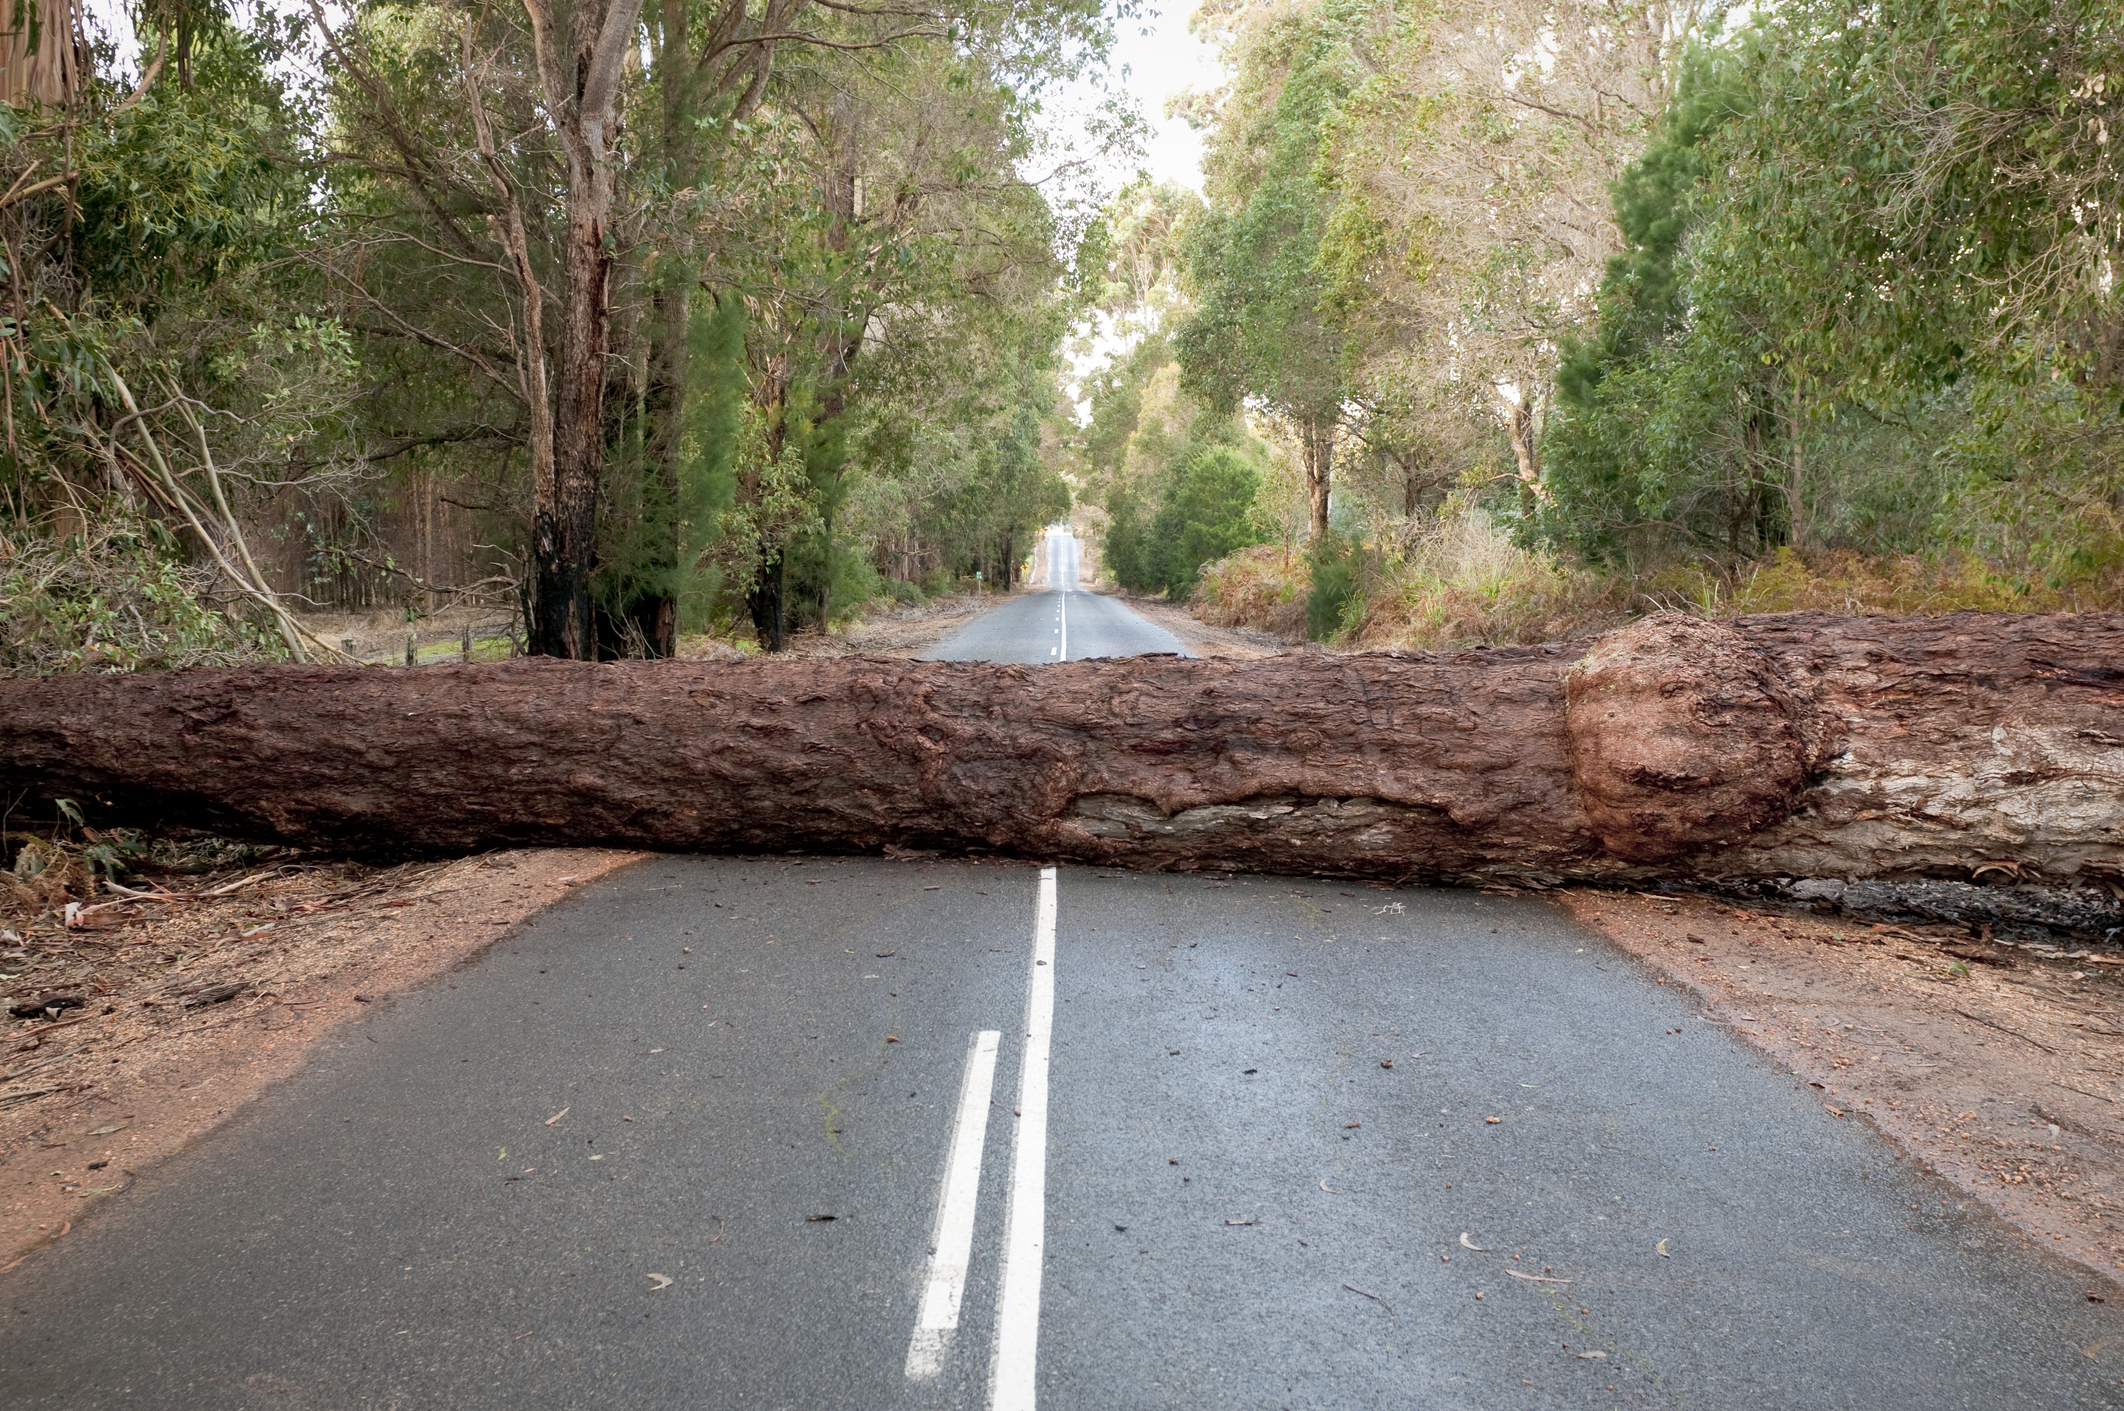 A fallen tree in the road